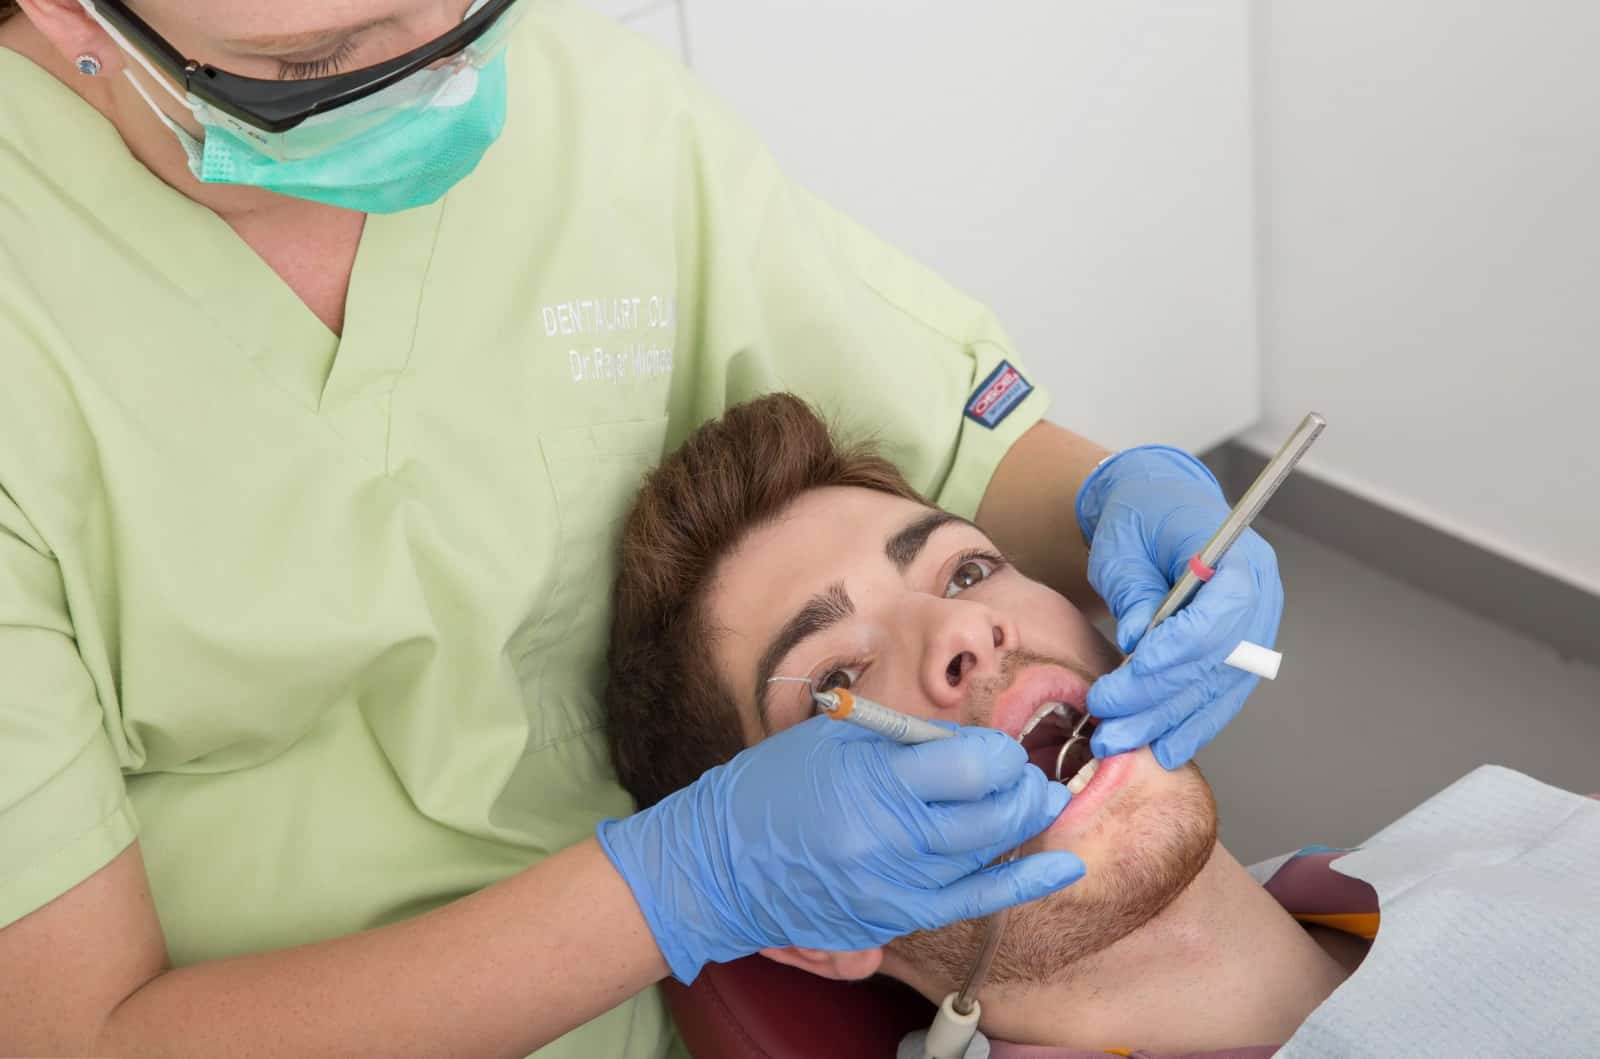 מרפאת Dental Art Clinic – הסרת אבנית עמוקה. צילום M-Studio Group E.Stern & O.Ster